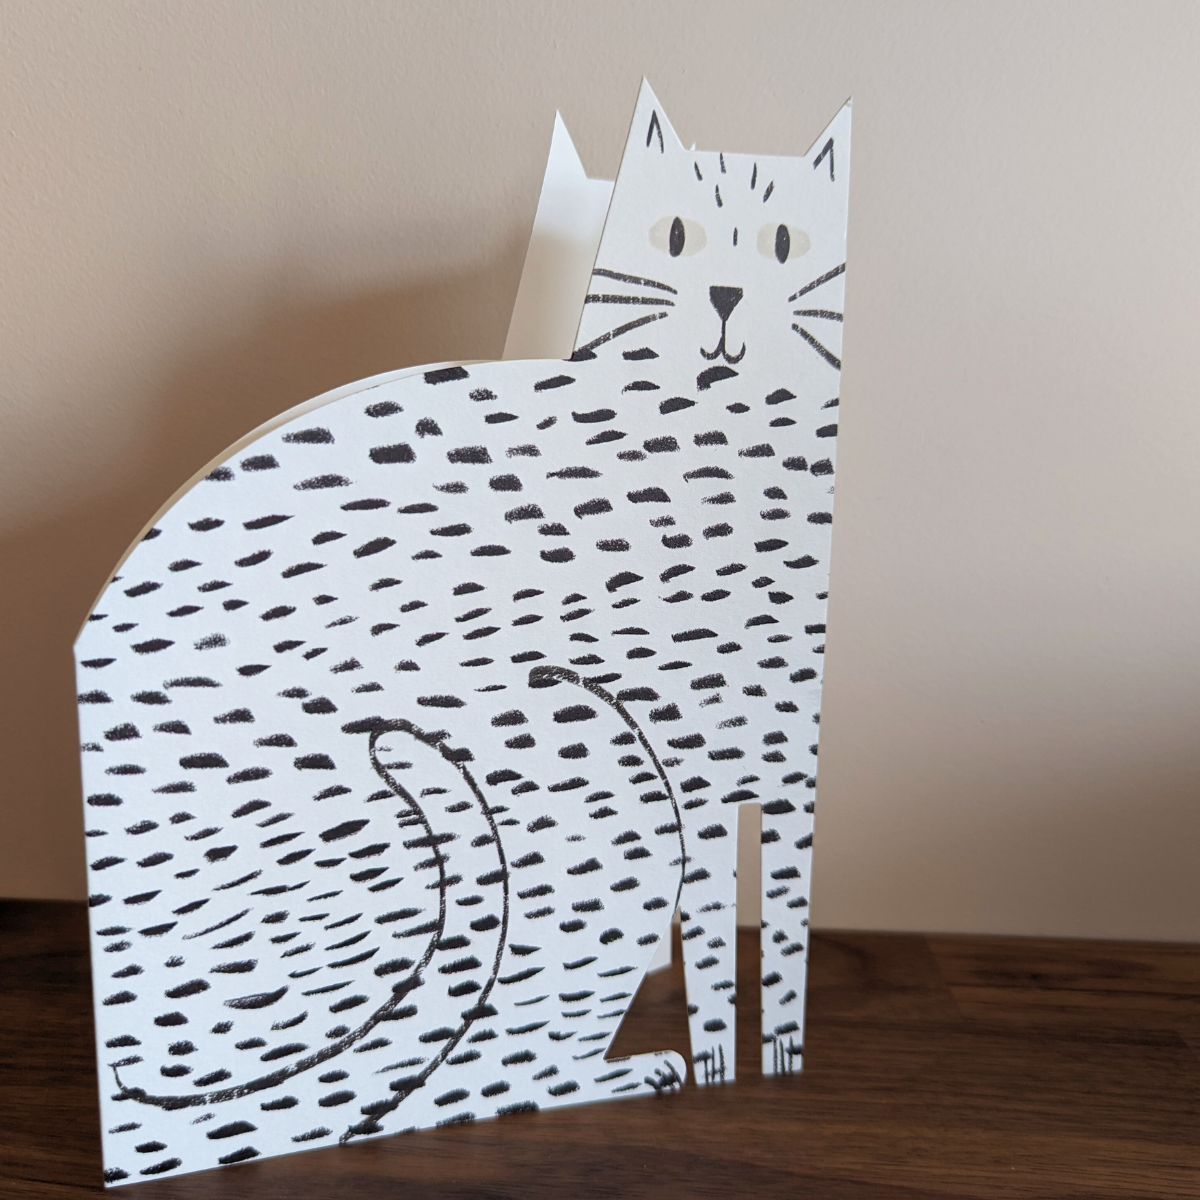 Cette carte découpée en forme de chat est une création artistique qui émerveillera les amoureux des félins ! 